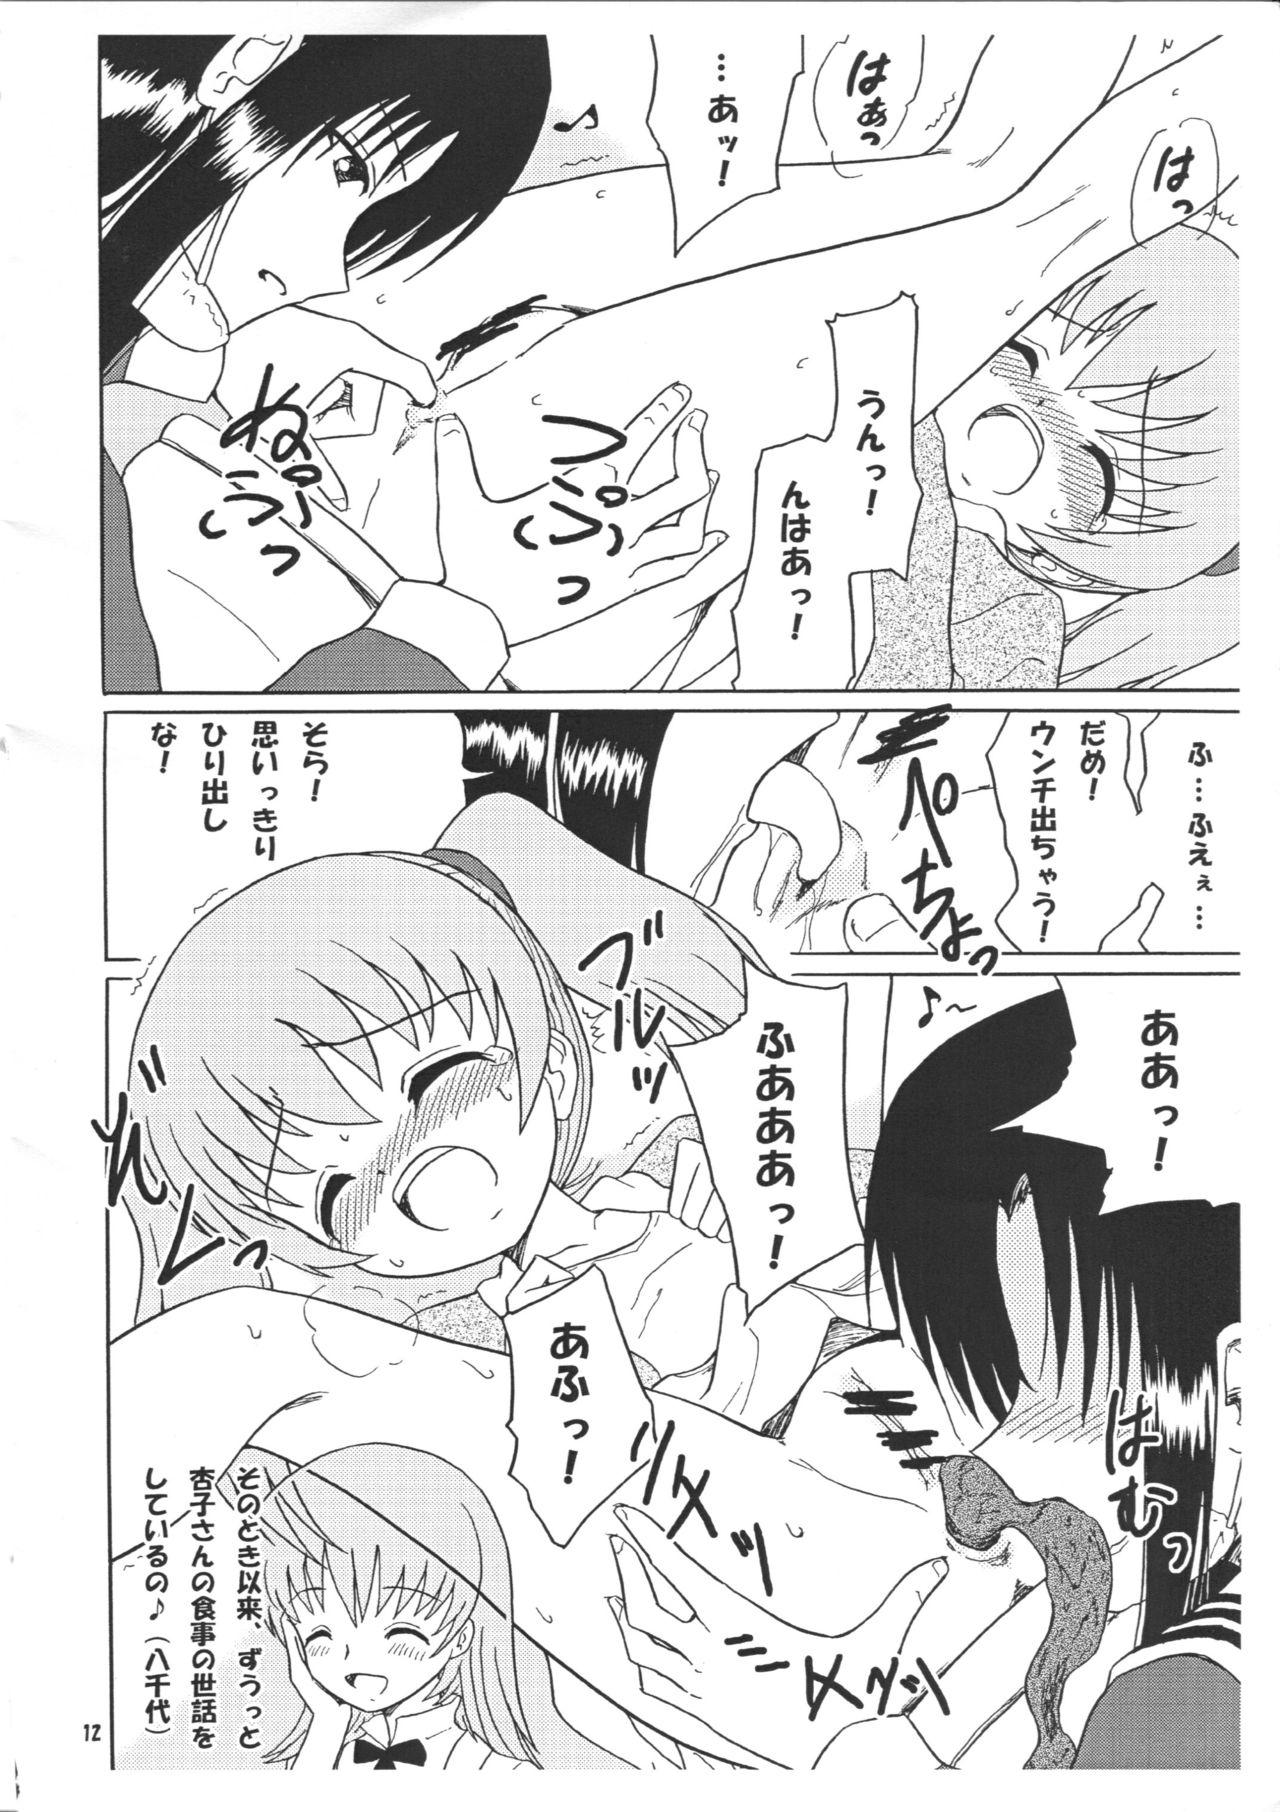 Trans Chirashi no Ura Vol. 3 - Toaru kagaku no railgun Toaru majutsu no index Pawg - Page 13